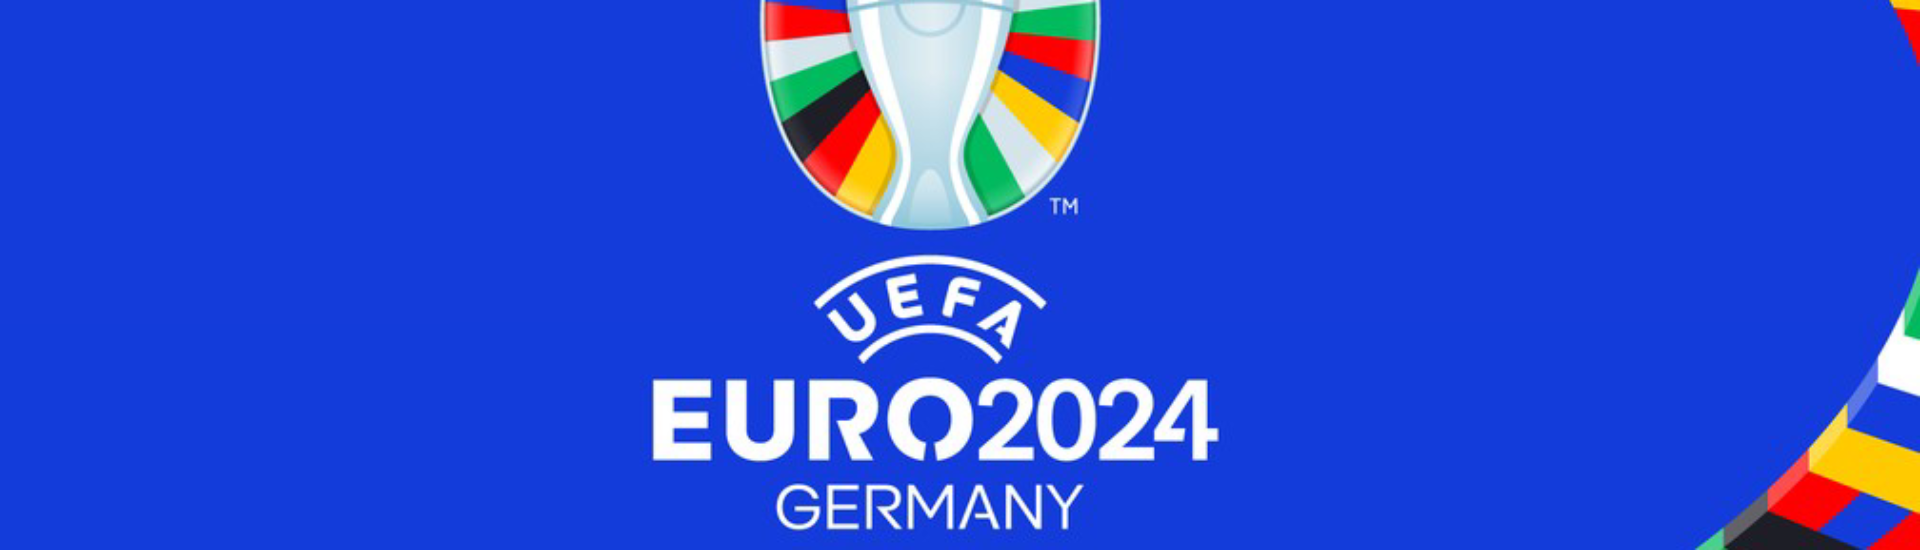 Alemanha e Escócia disputam jogo inaugural do Euro'2024 em Munique